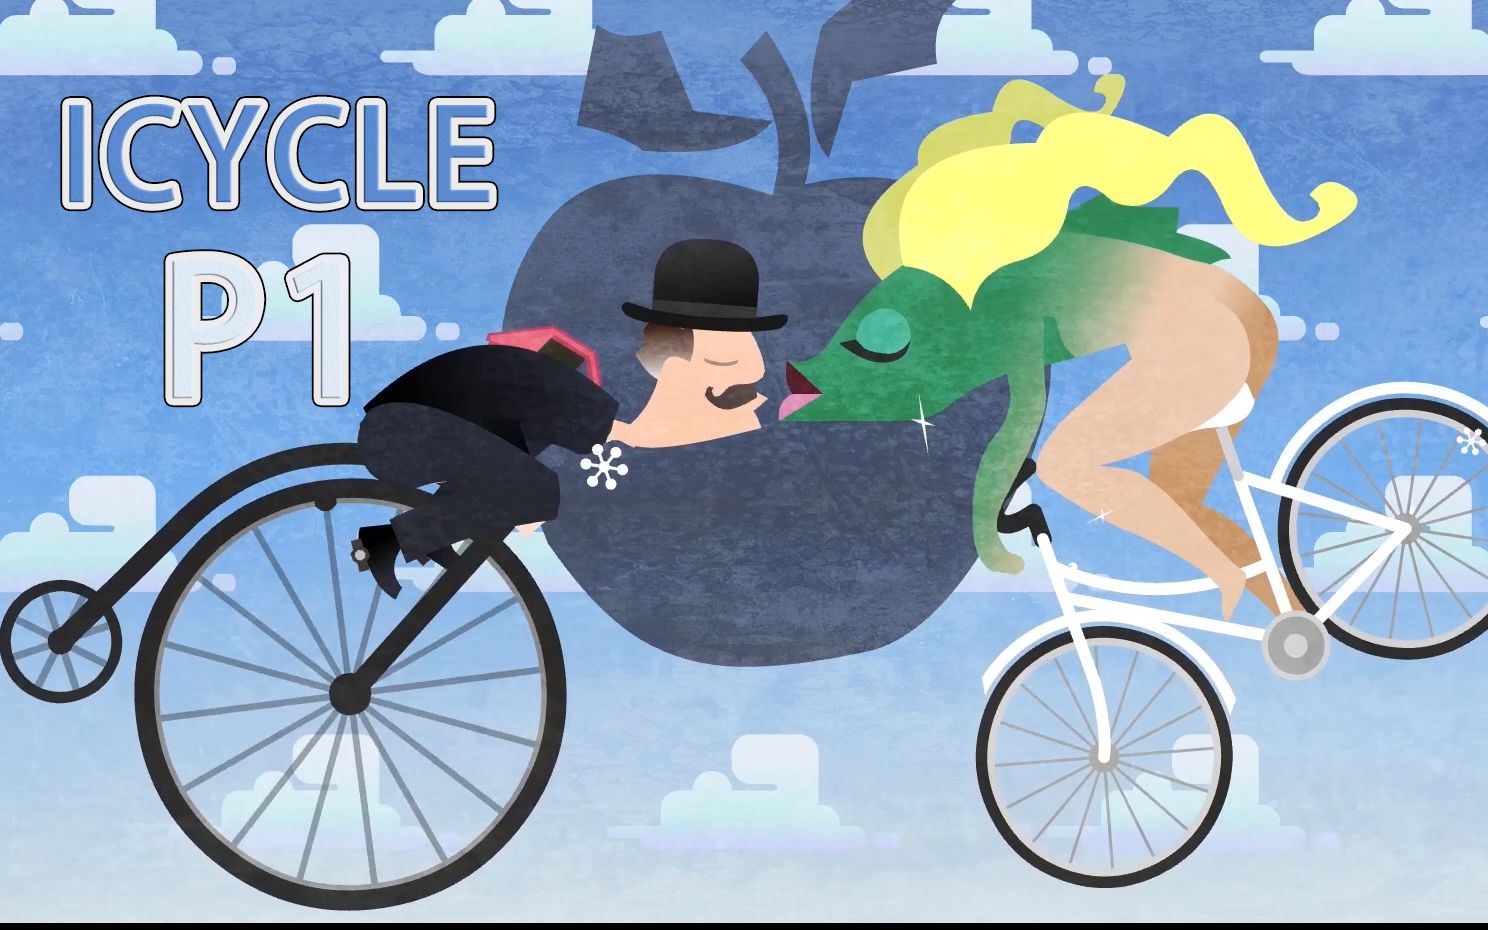 [雪地单车] Icycle 试玩 不穿衣 就发抖